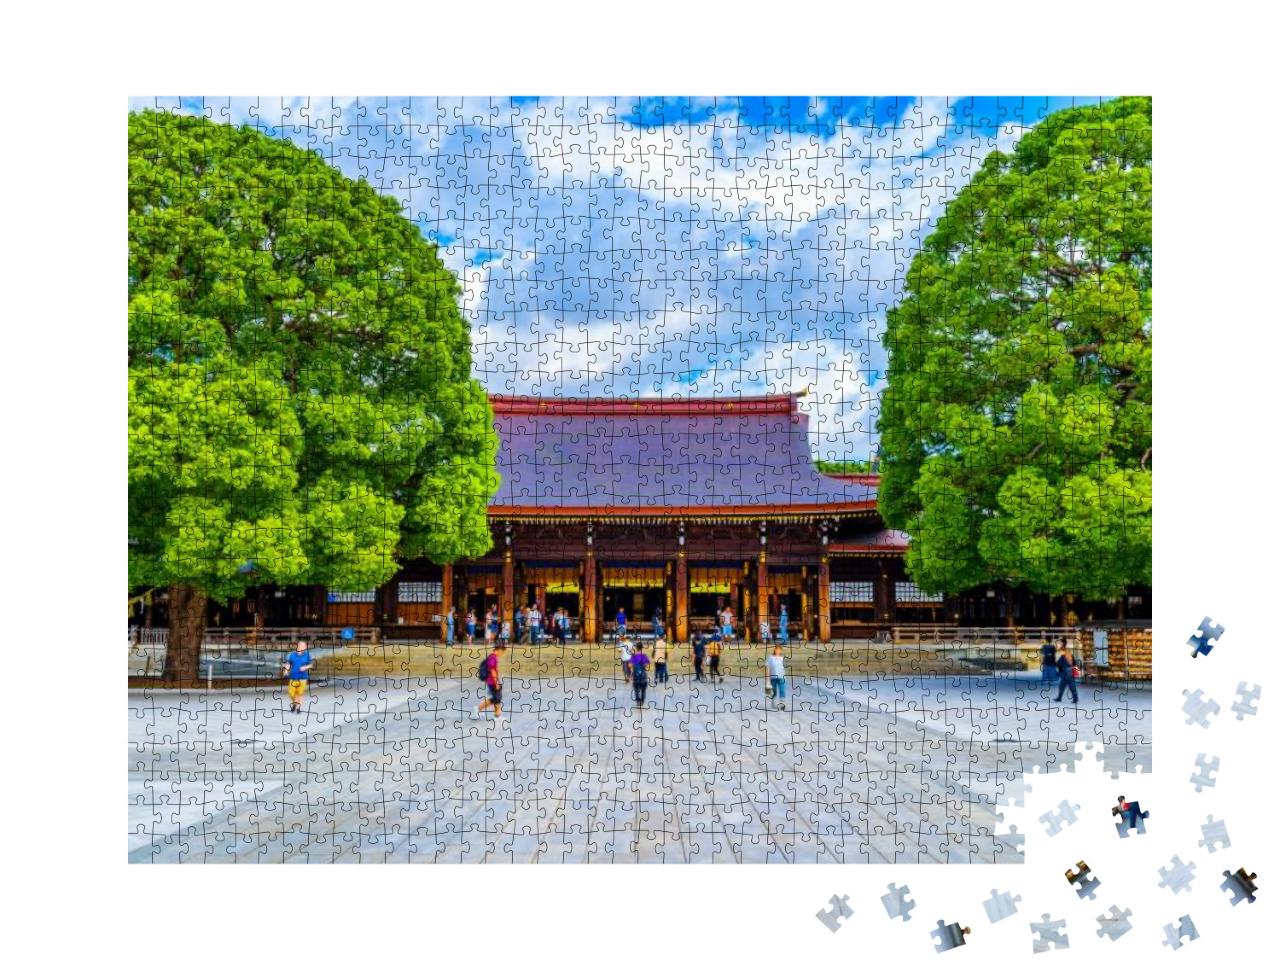 Meiji Jingu Shrine Located in Shibuya, Tokyo... Jigsaw Puzzle with 1000 pieces